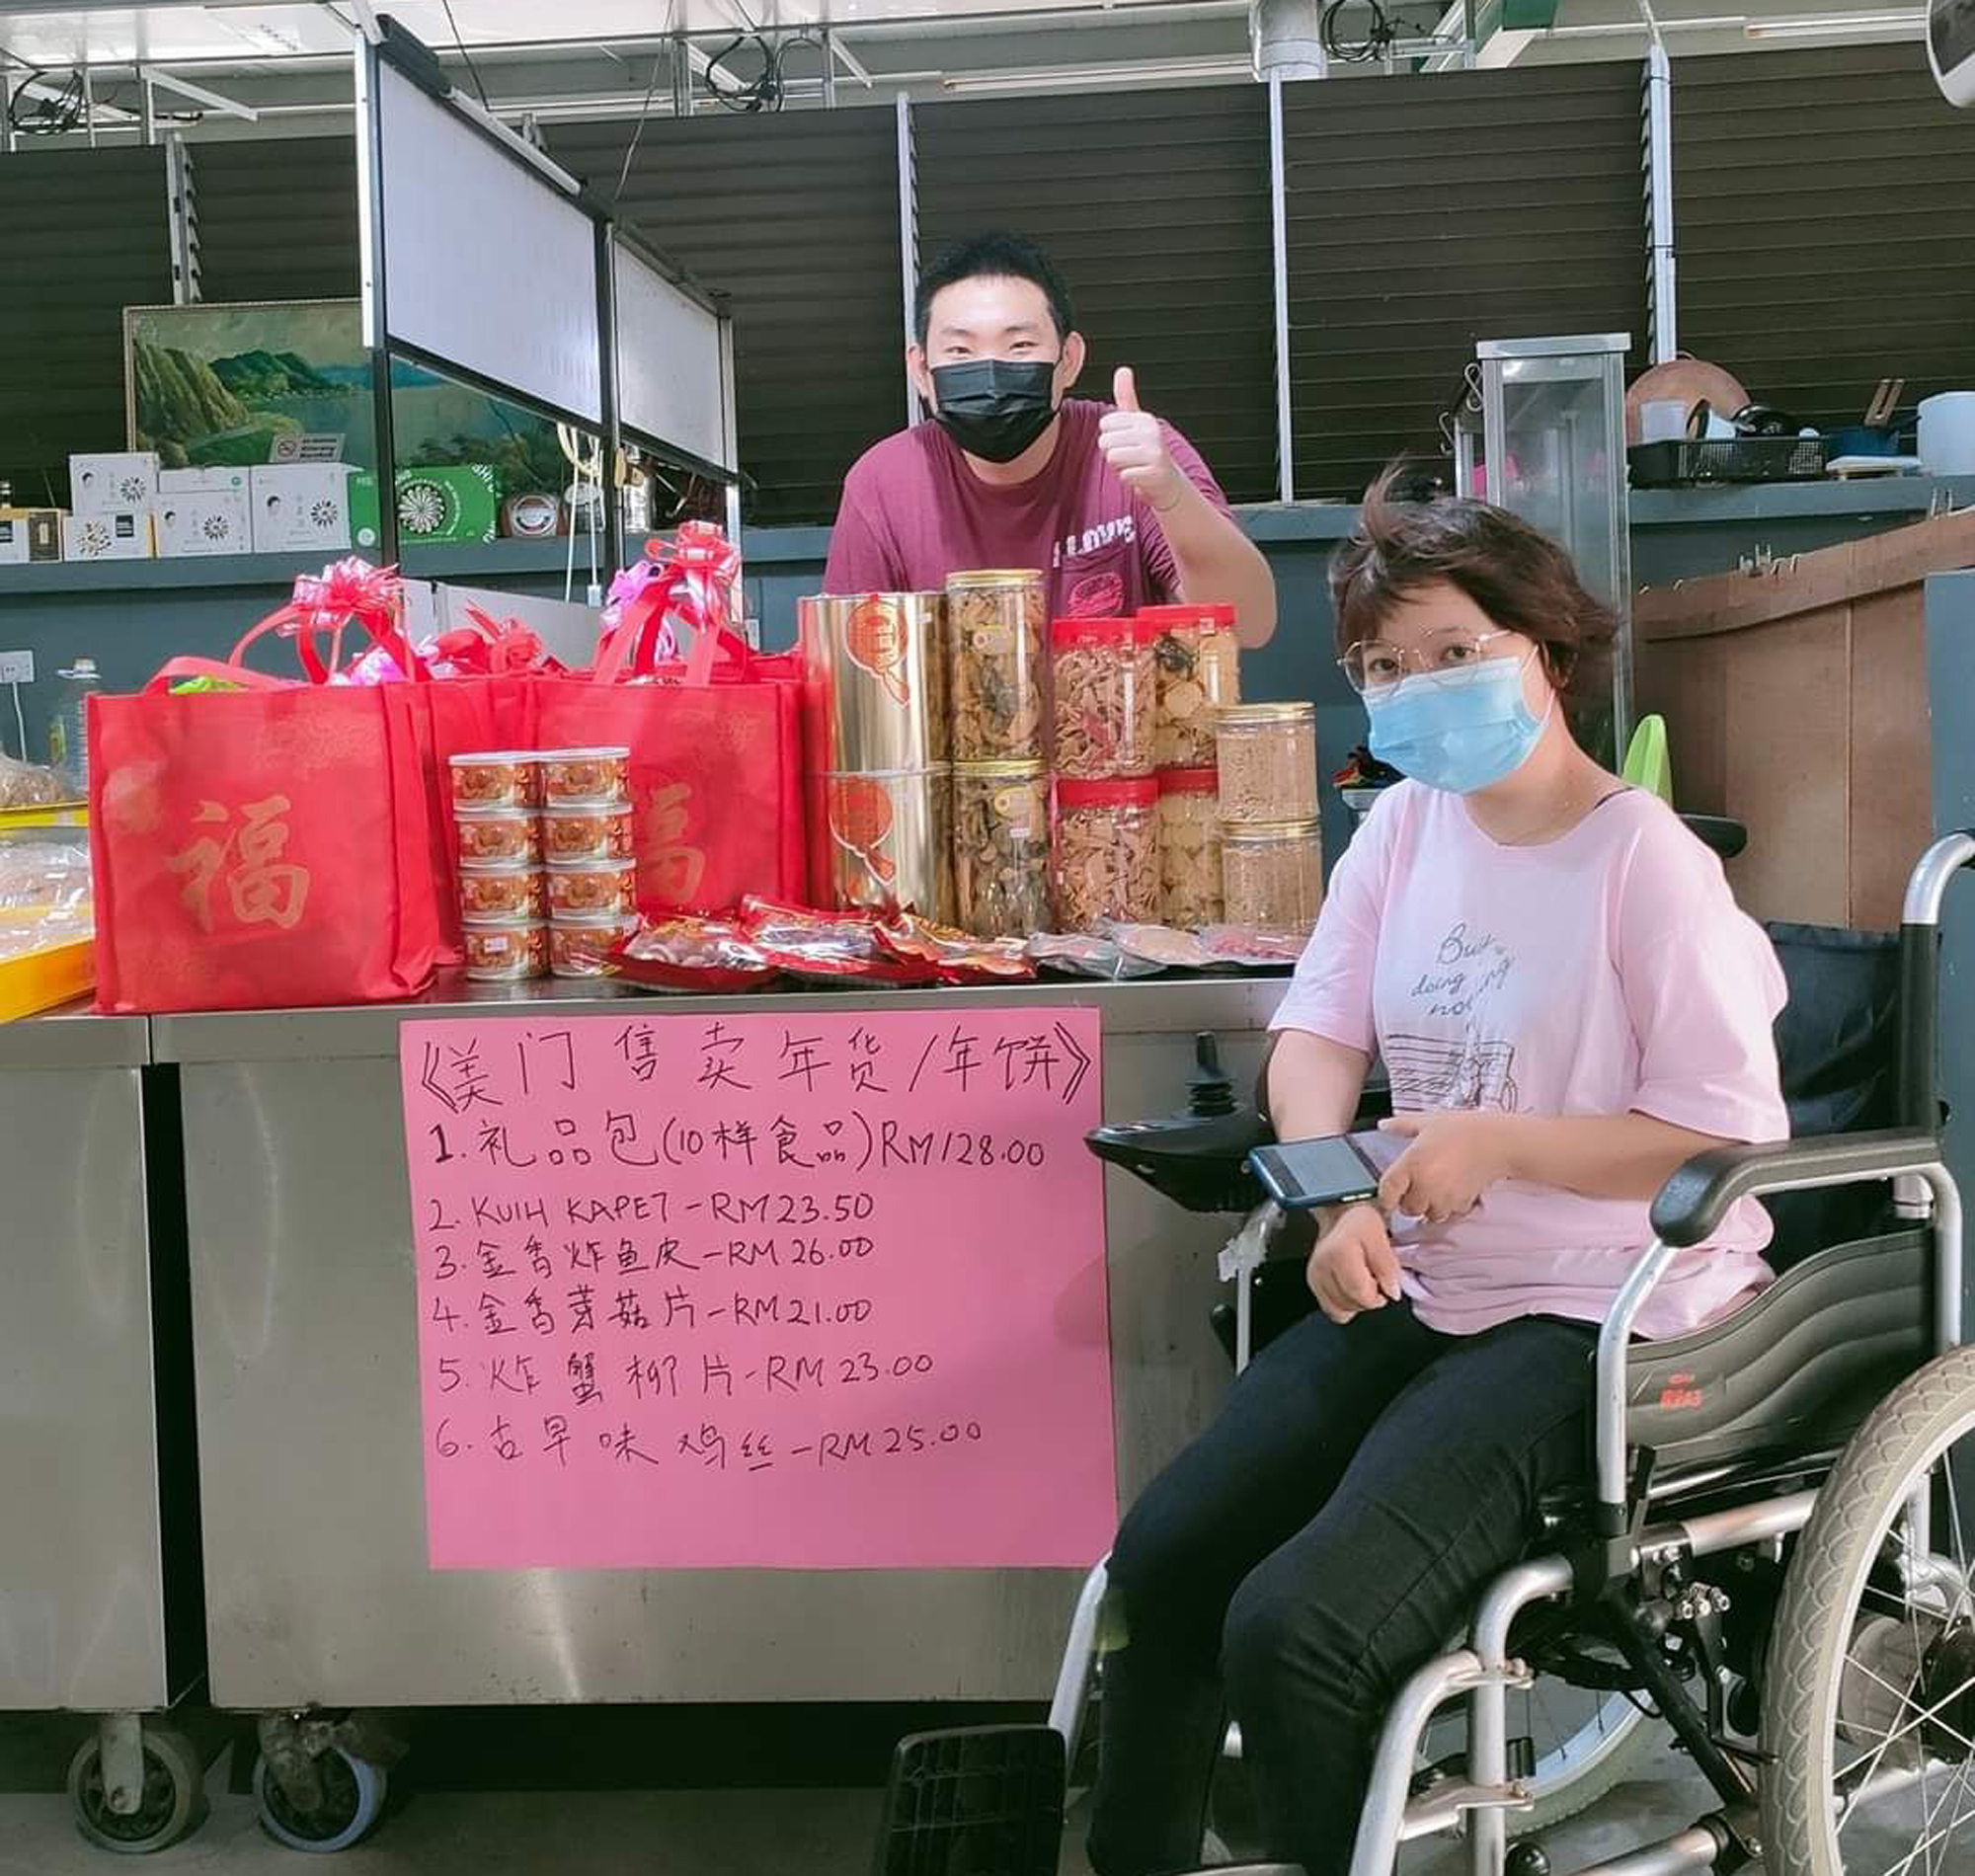 社区动态／残障人士卖新春礼袋 曼绒美门吁支持